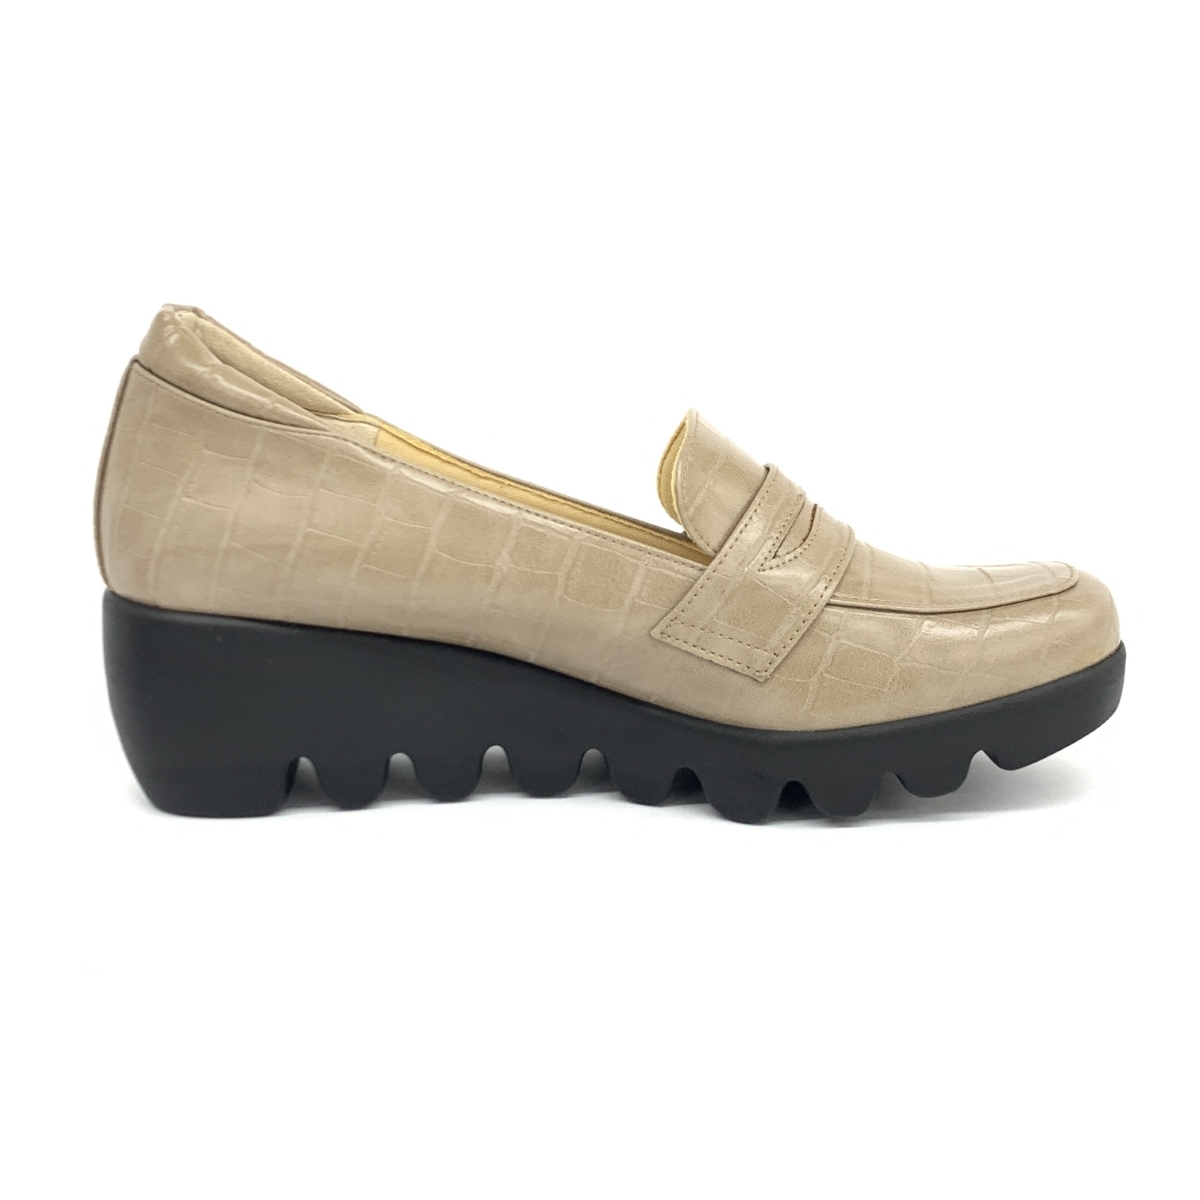  excellent *hills avenue Hill z avenue pumps 23.0cm* beige coin Loafer type wave sole lady's shoes shoes